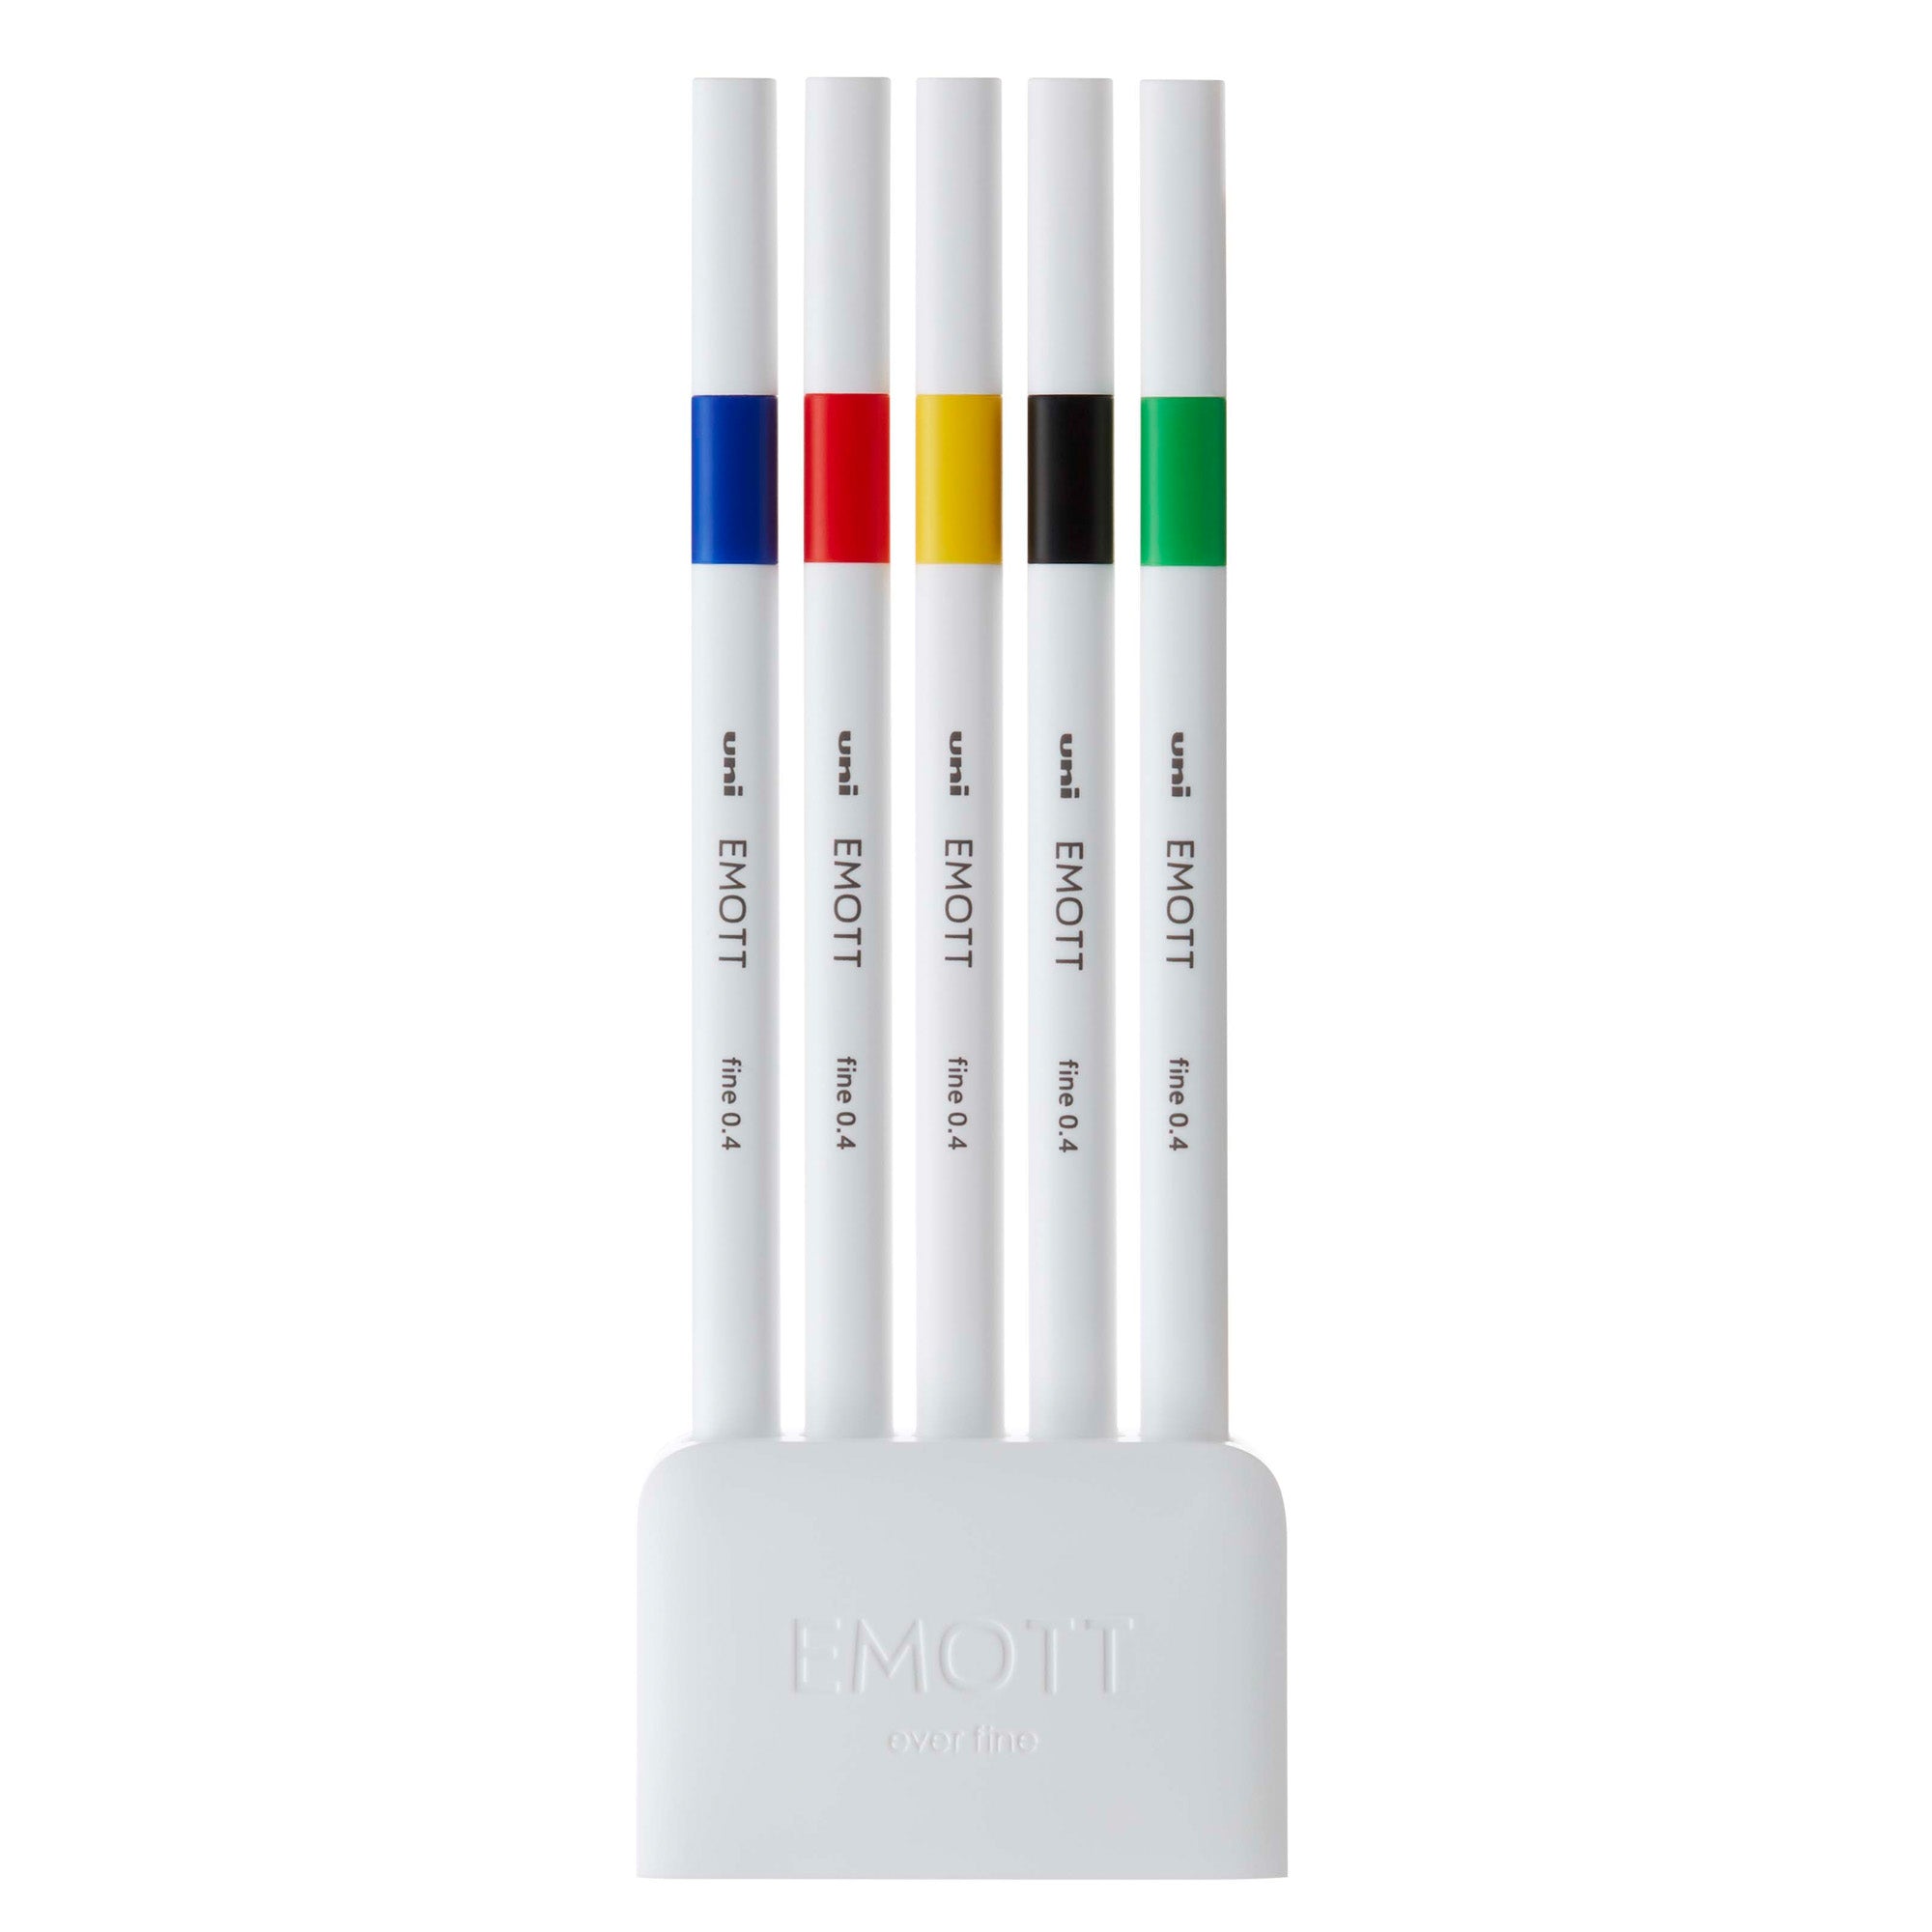 uni-mitsubishi-astuccio-5-fineliner-emott-tratto-0-4mm-colori-ass-vivid